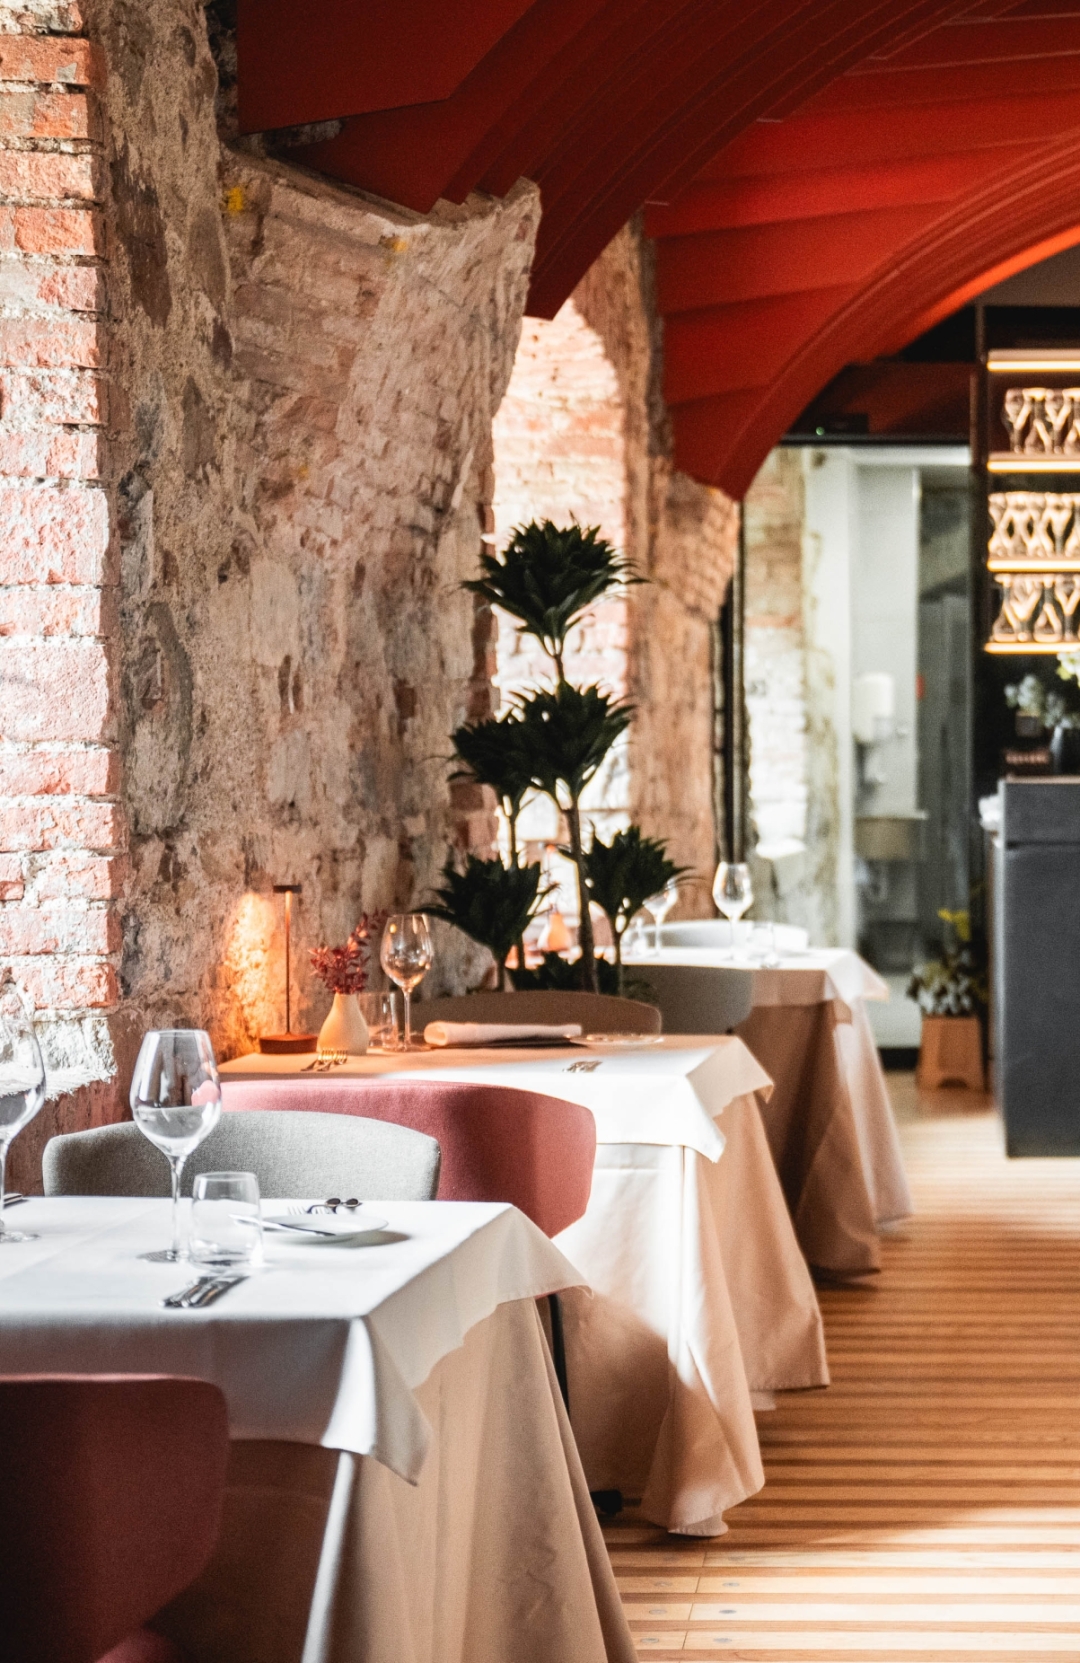 Gostilna na Gradu, ki je sinonim za izvrstno kulinariko na Ljubljanskem gradu, ponuja novo doživetje okusov in ambienta